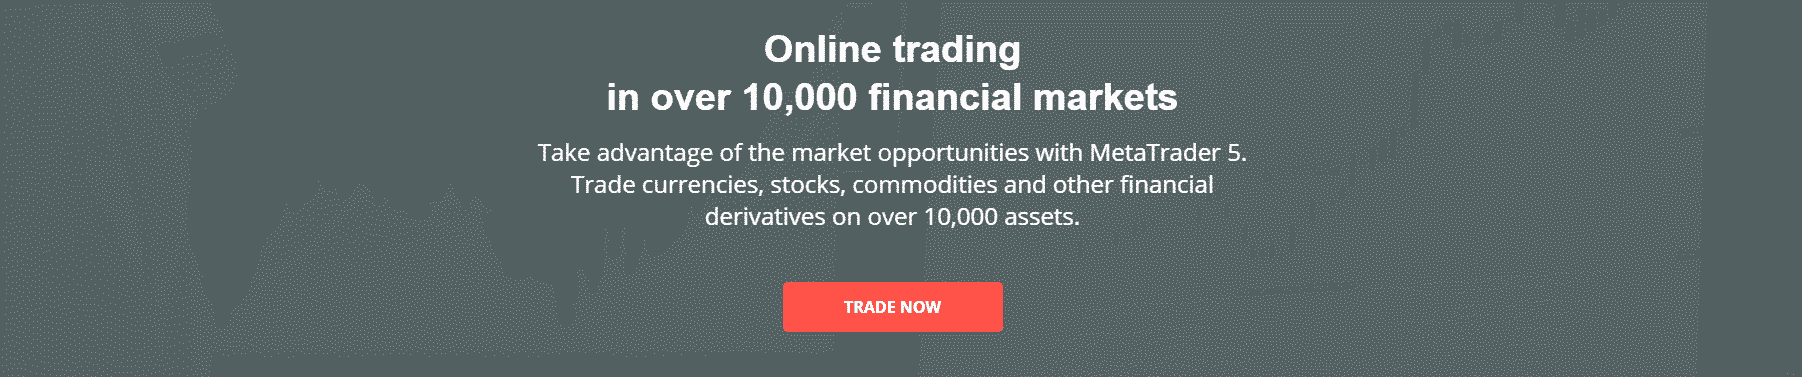 Revisión de Kiplar: tardanzas en línea en más de 10,000 mercados financieros